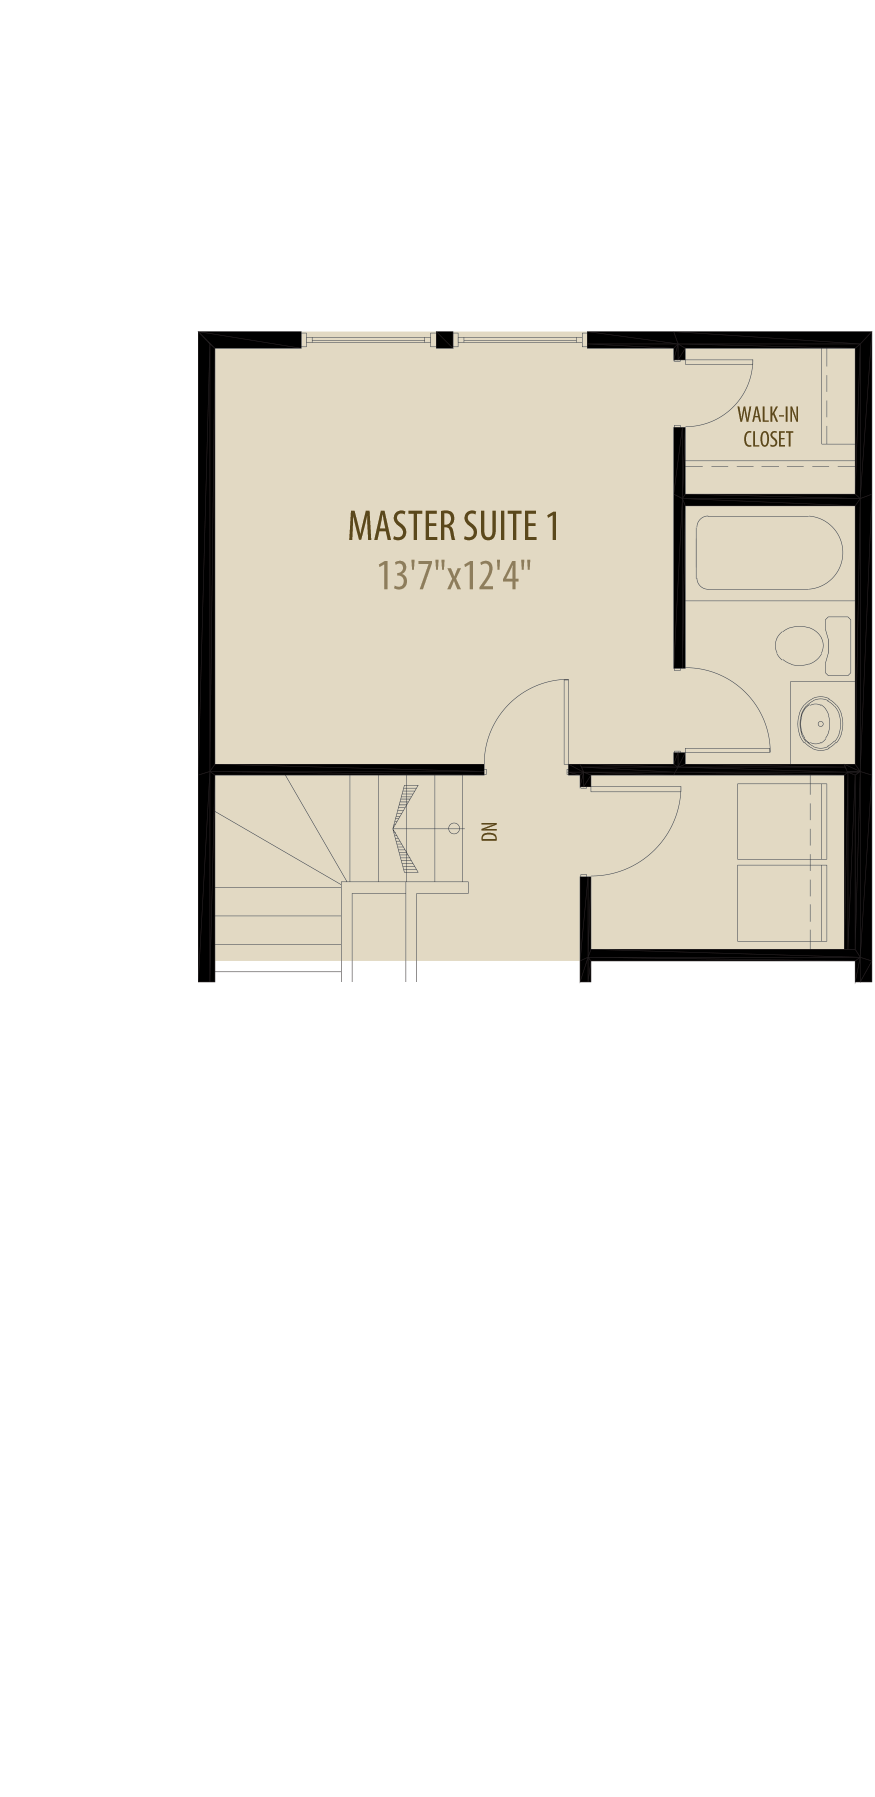 Dual Master Suites